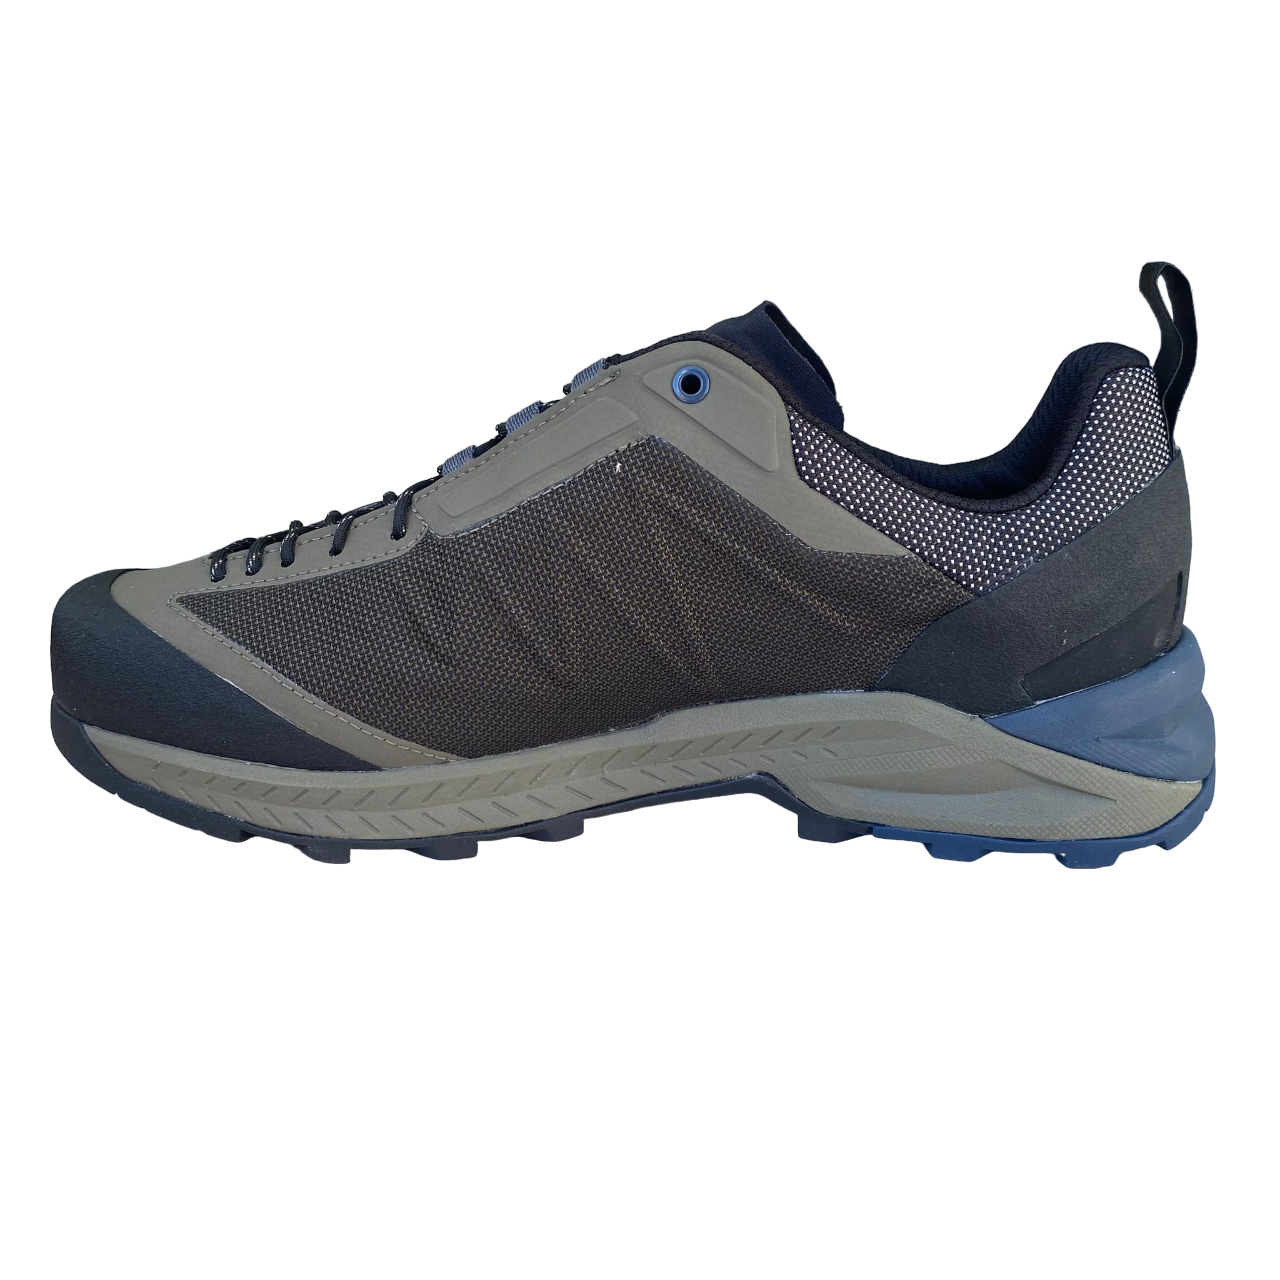 Dolomite scarpa bassa per la montagna impermeabile Crodarossa Tech GTX 296271 BGBL verde imbrunito-blu